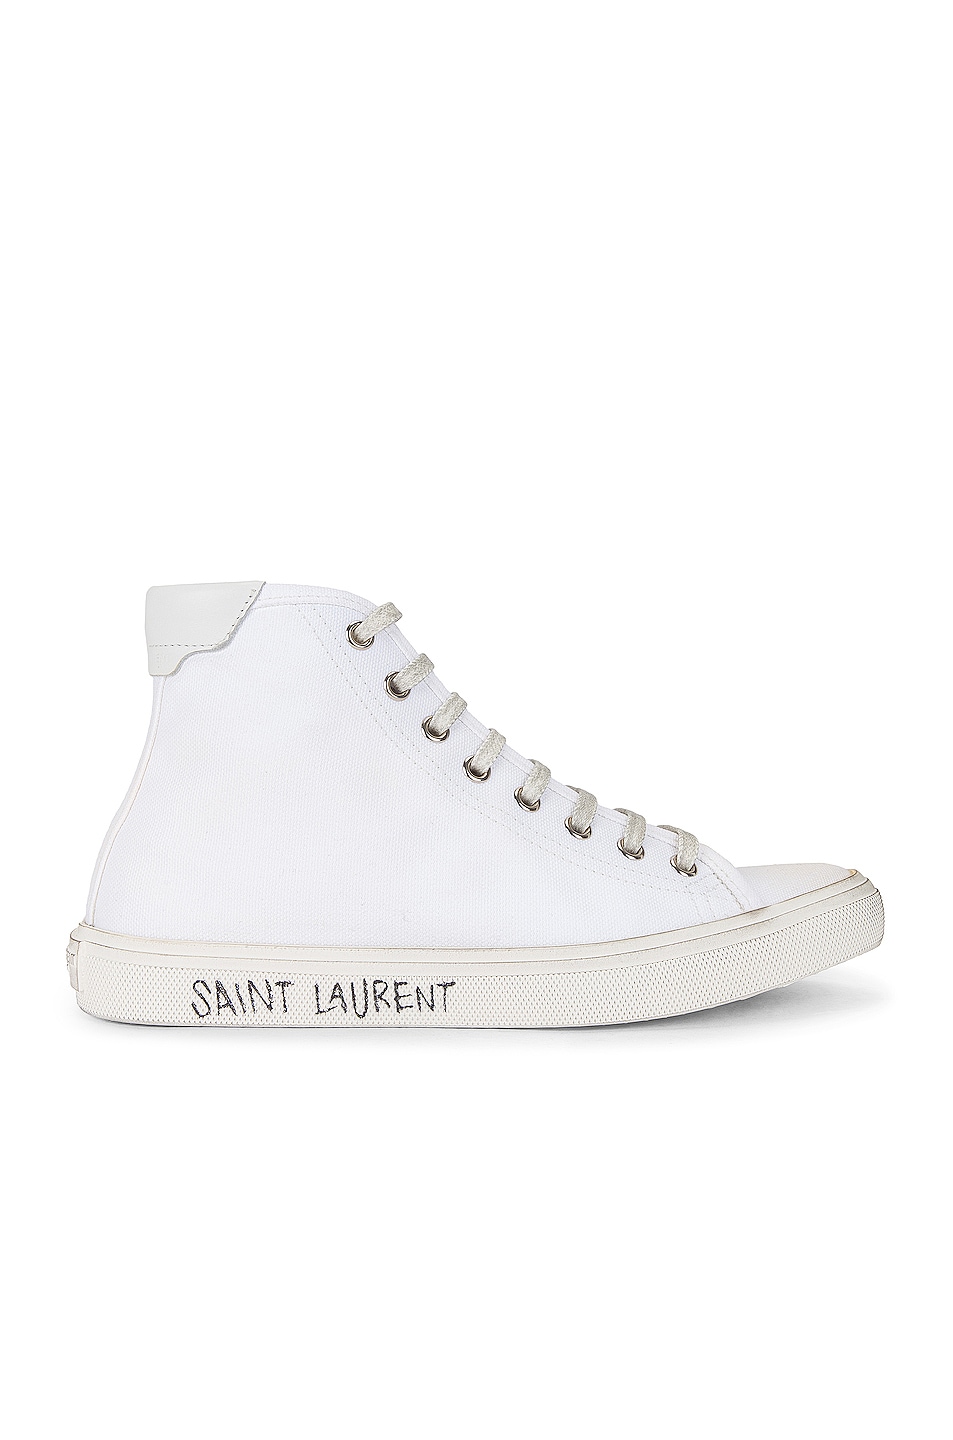 Image 1 of Saint Laurent Malibu Mid Top Signature Sneakers in Blanc Optique